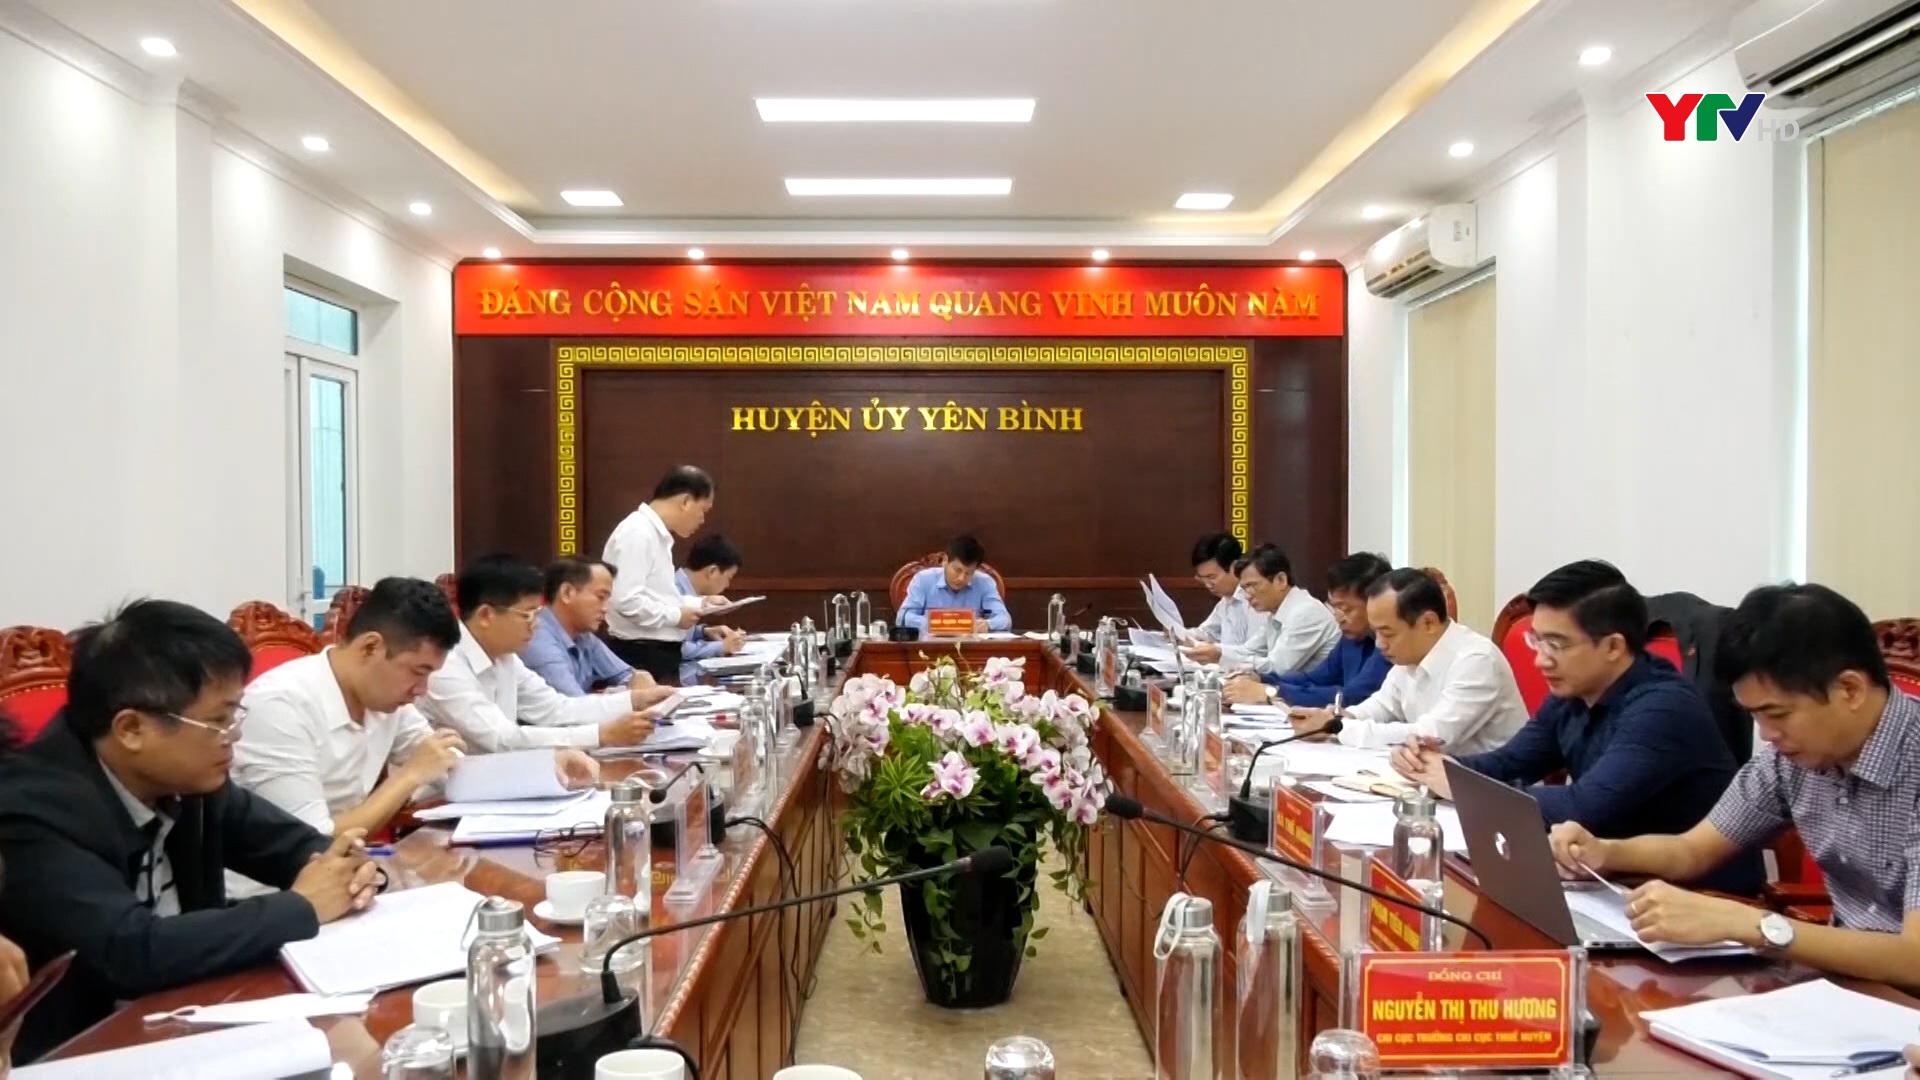 Đồng chí Ngô Hạnh Phúc, Phó Chủ tịch UBND tỉnh làm việc với huyện Yên Bình về giải pháp trong công tác thu ngân sách